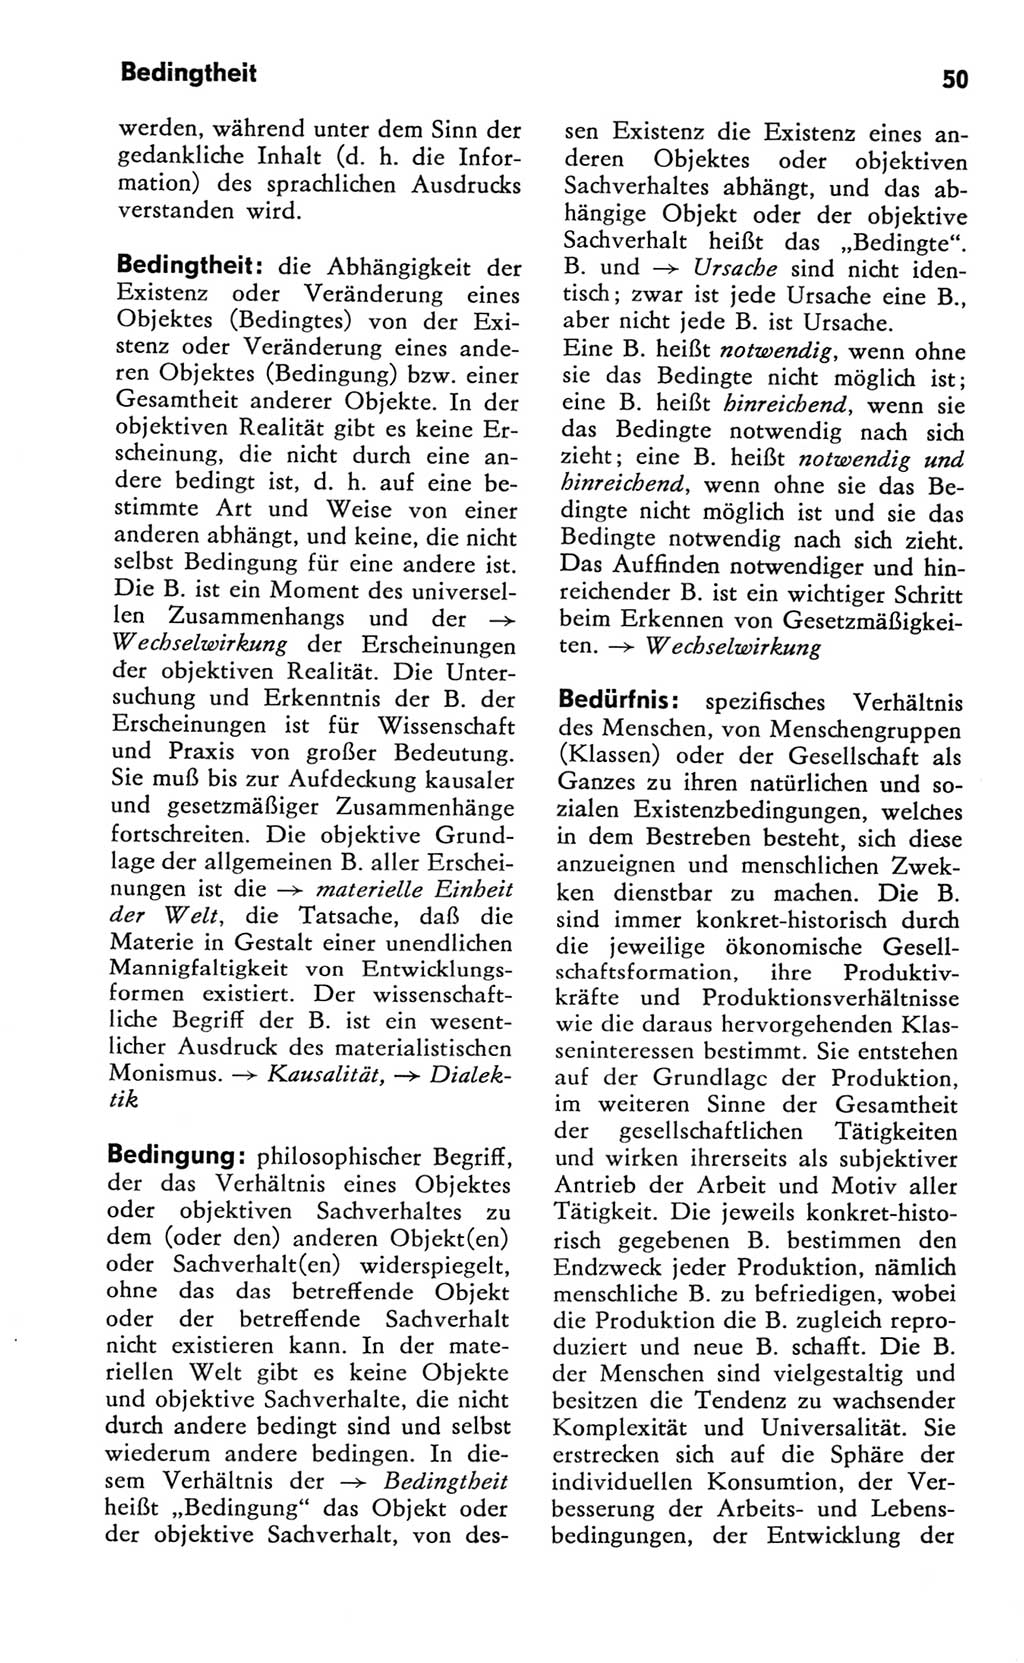 Kleines Wörterbuch der marxistisch-leninistischen Philosophie [Deutsche Demokratische Republik (DDR)] 1981, Seite 50 (Kl. Wb. ML Phil. DDR 1981, S. 50)